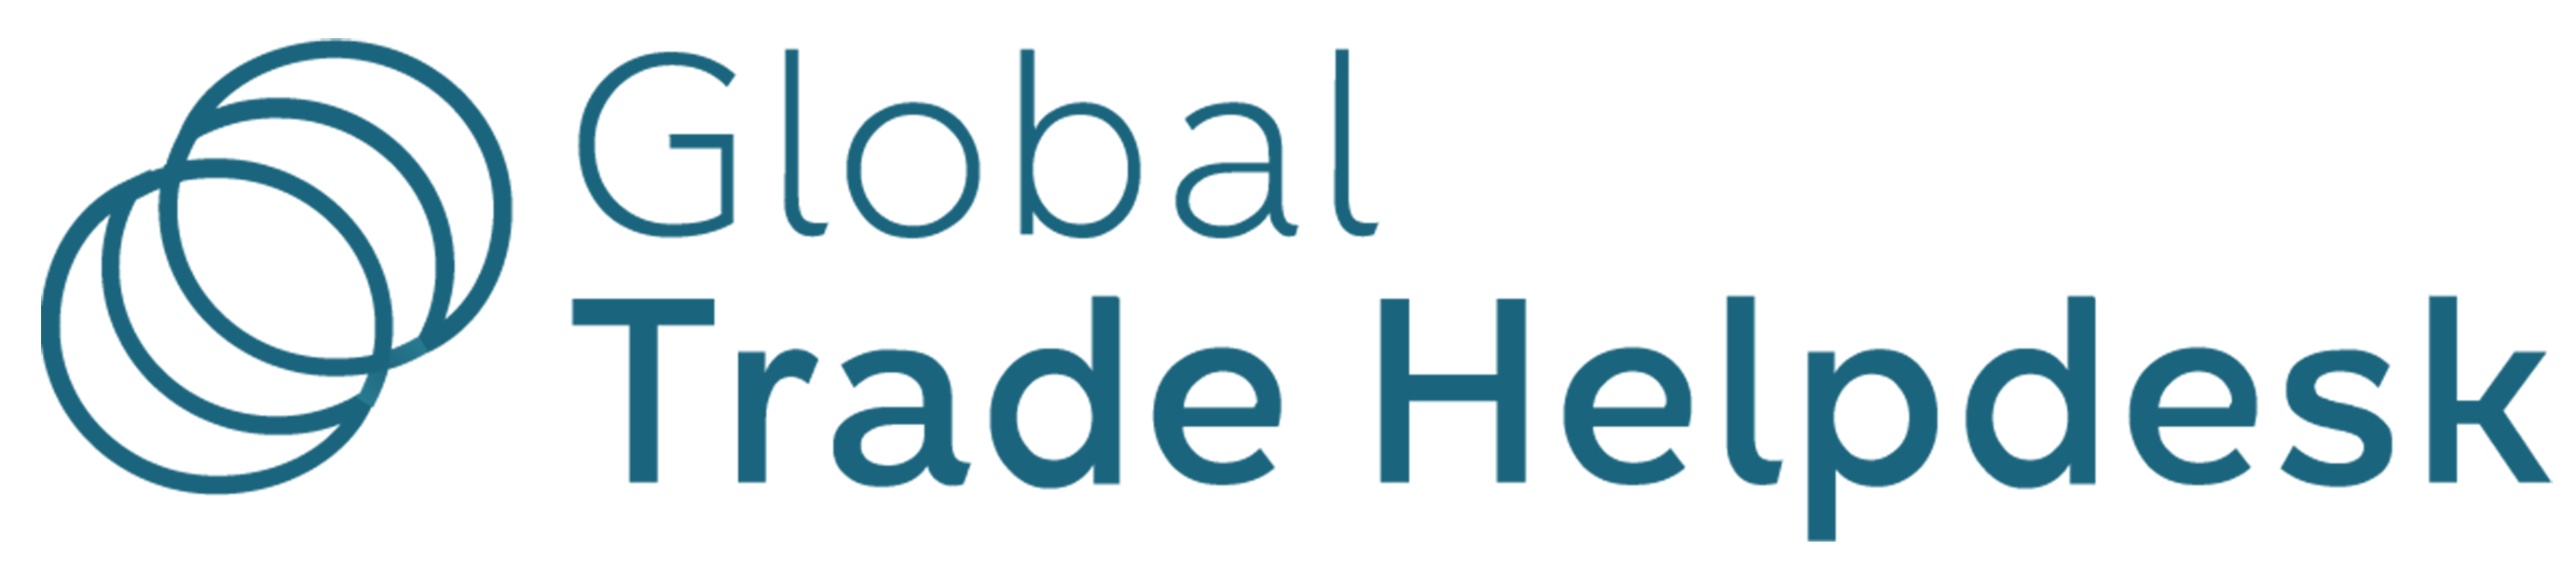 Logotipo de Global Trade Helpdesk